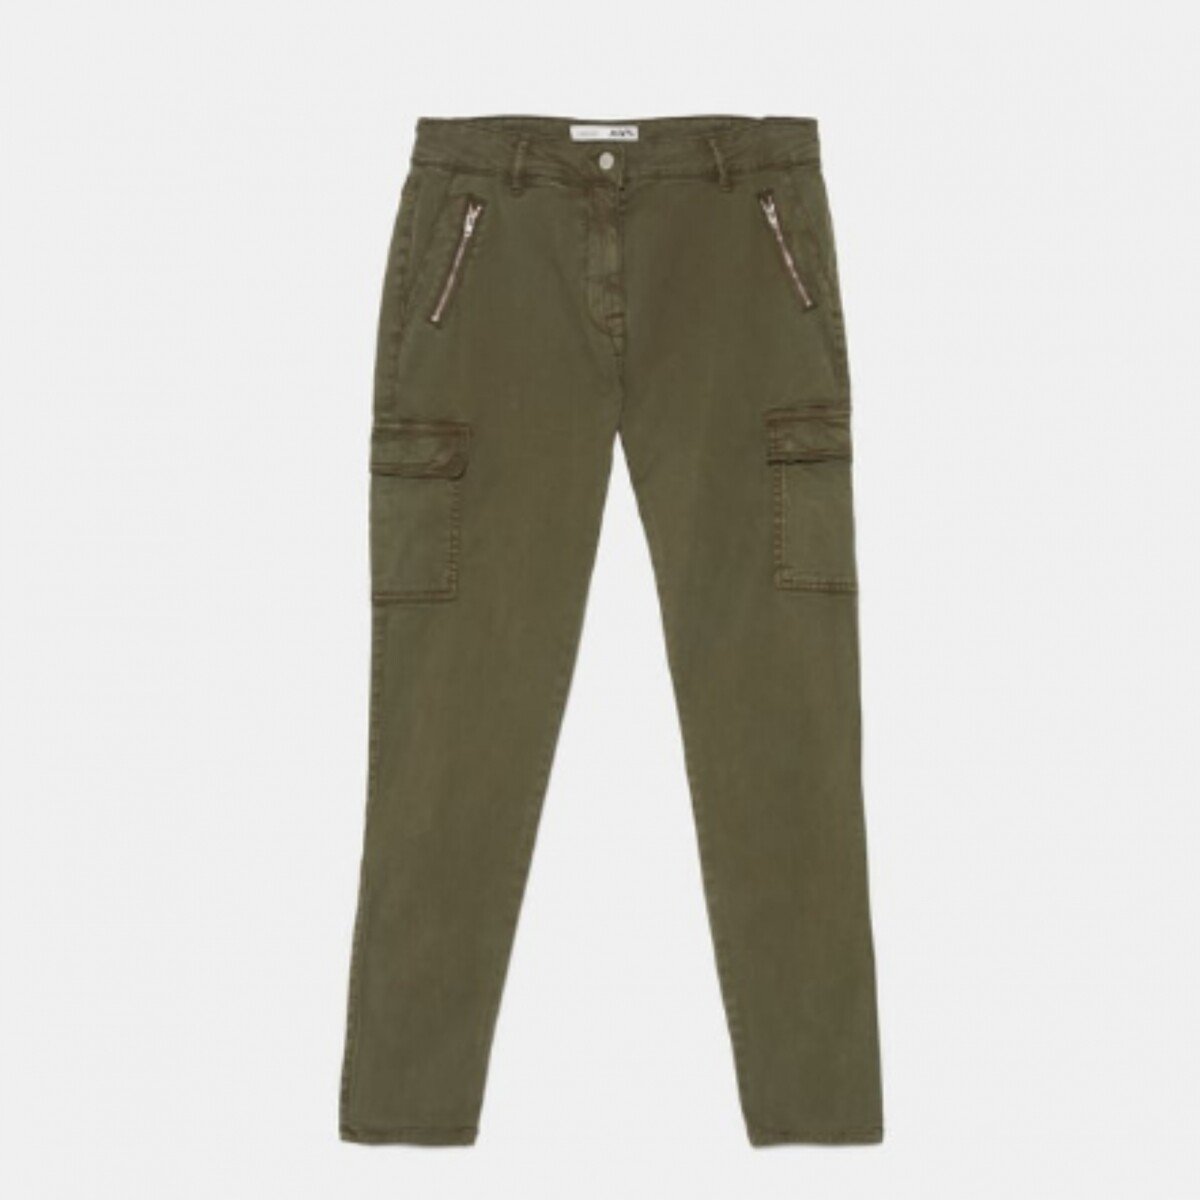 Foto: Na Zara, a calça jeans cargo pode ser achada tanto na cor verde  quanto na preta (bem utilitário), por R$299. - Purepeople